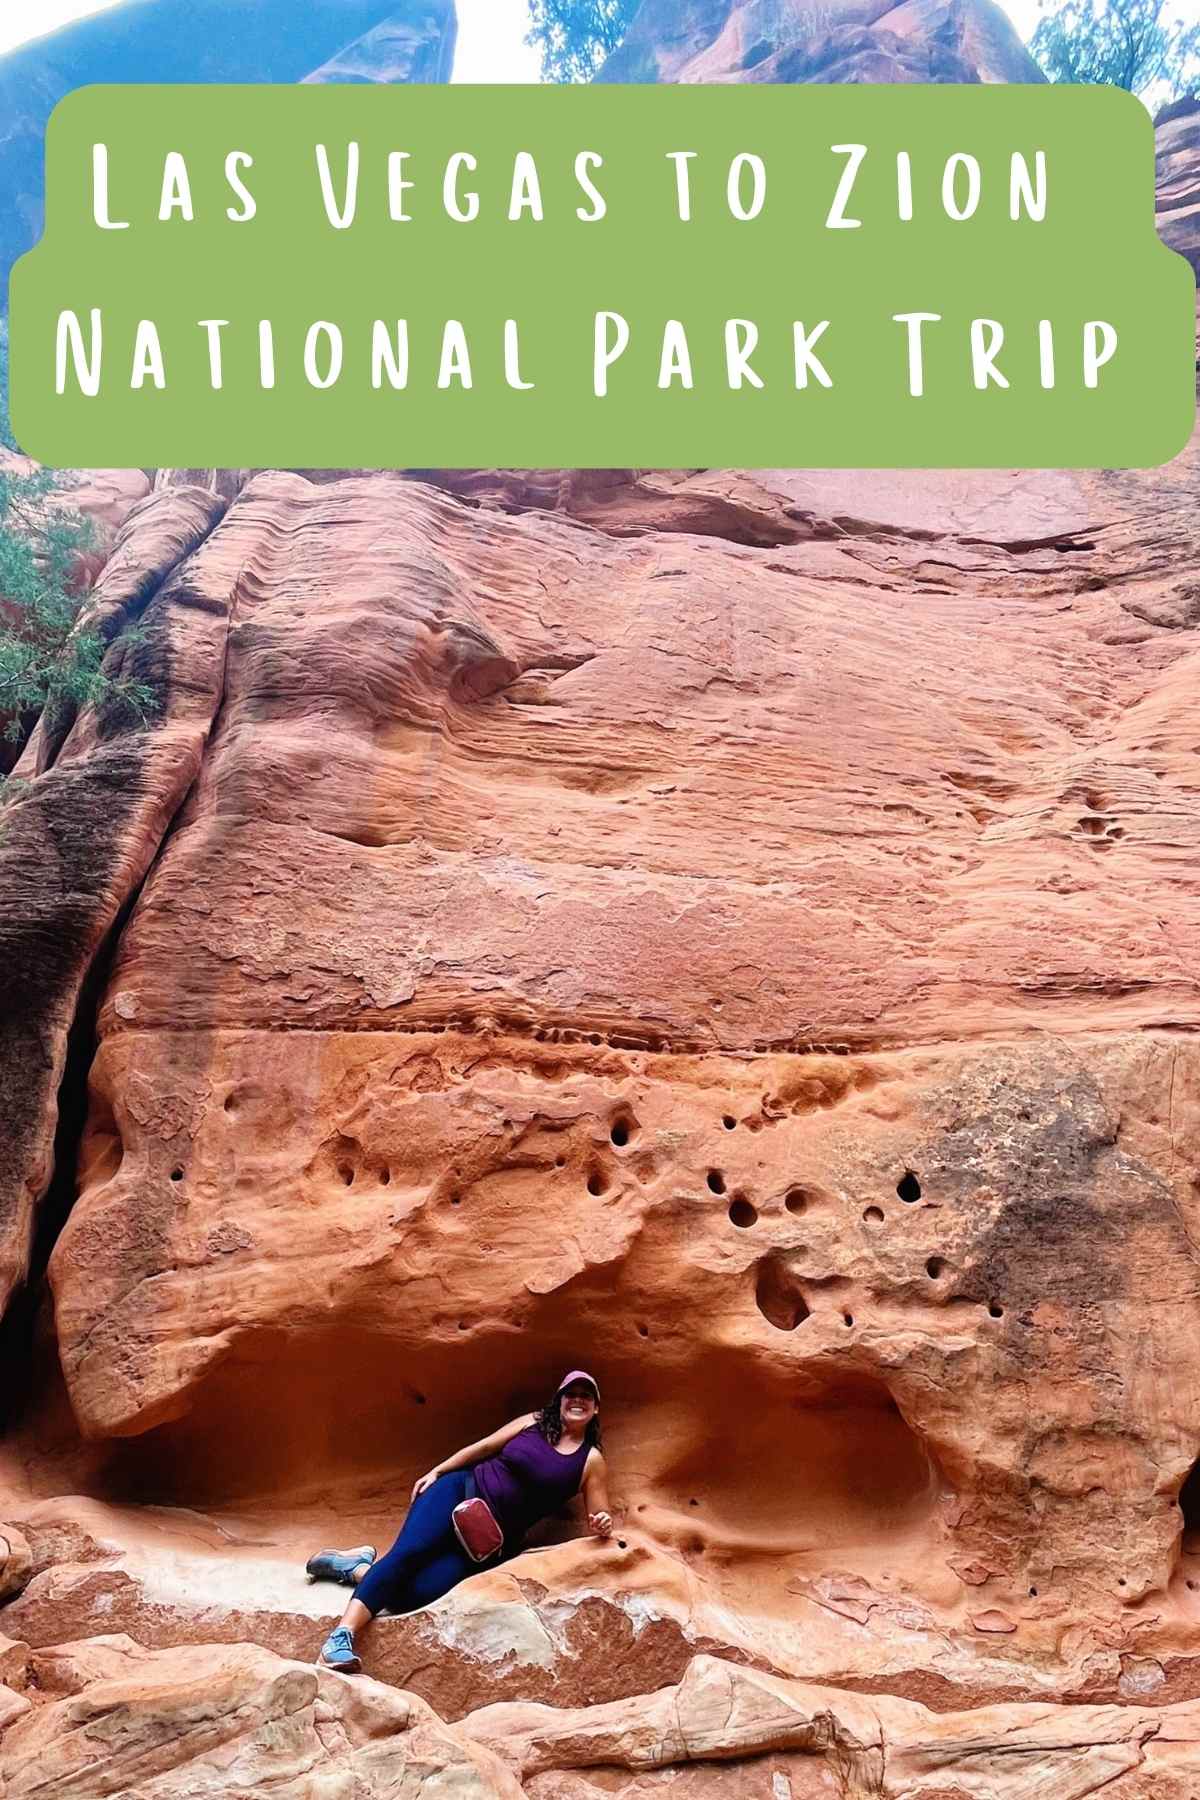 Las Vegas to Zion National Park Trip